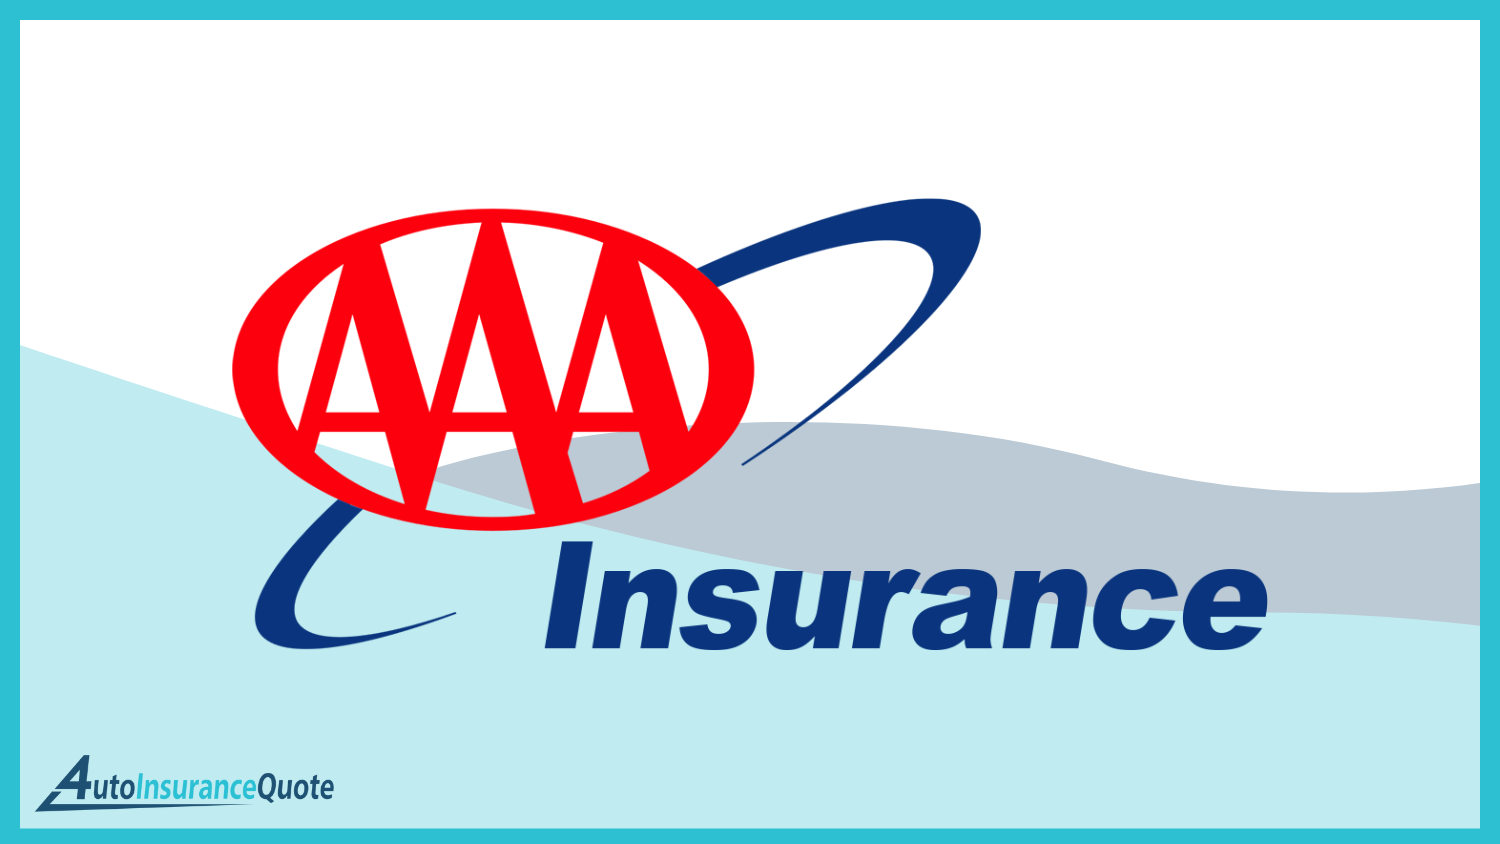 AAA: Best Auto Insurance Companies